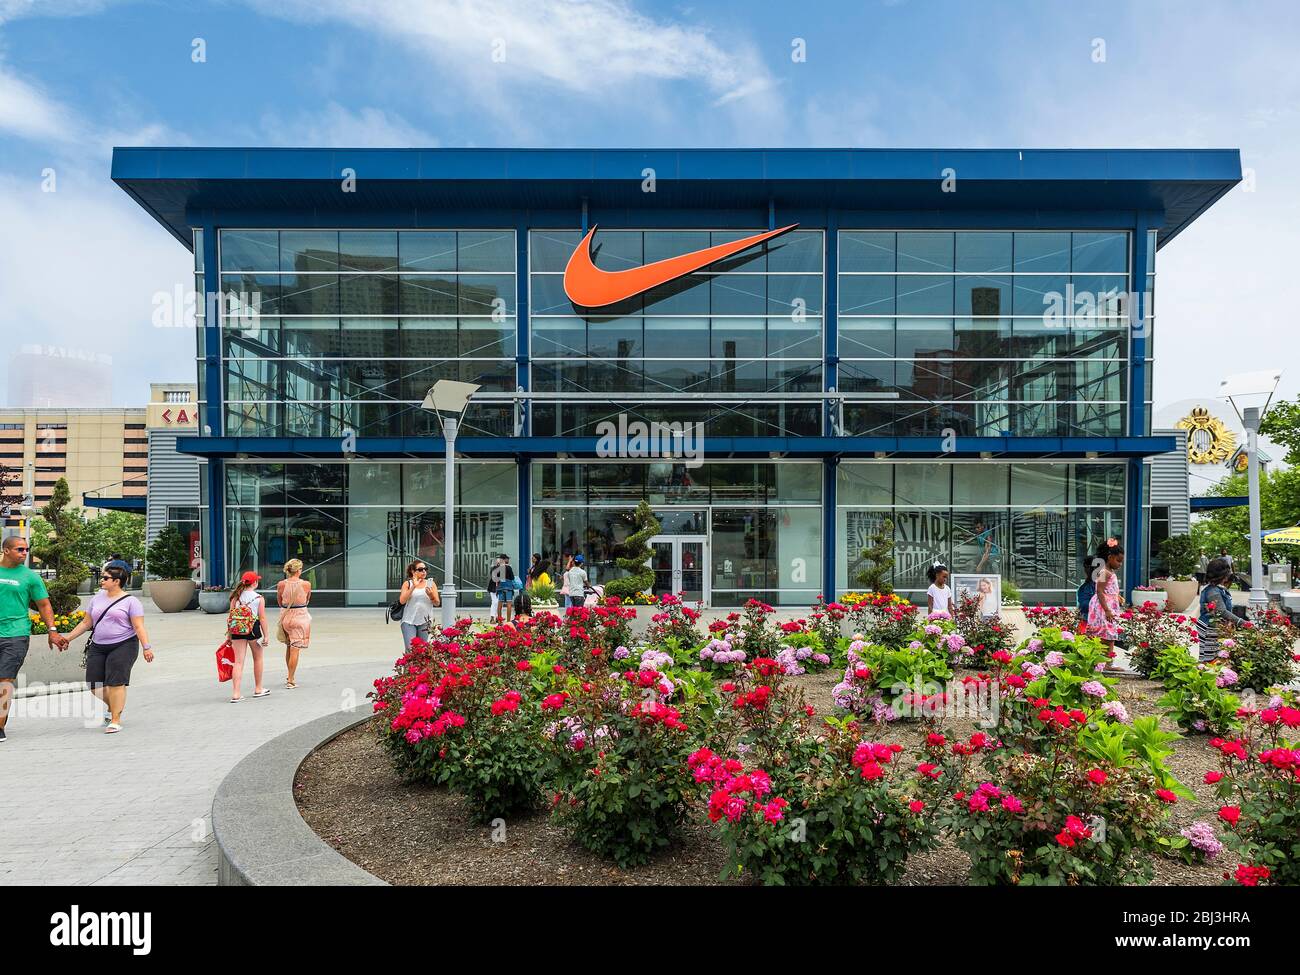 Tienda outlet Nike Factory en Atlantic City Nueva Jersey Fotografía de stock -